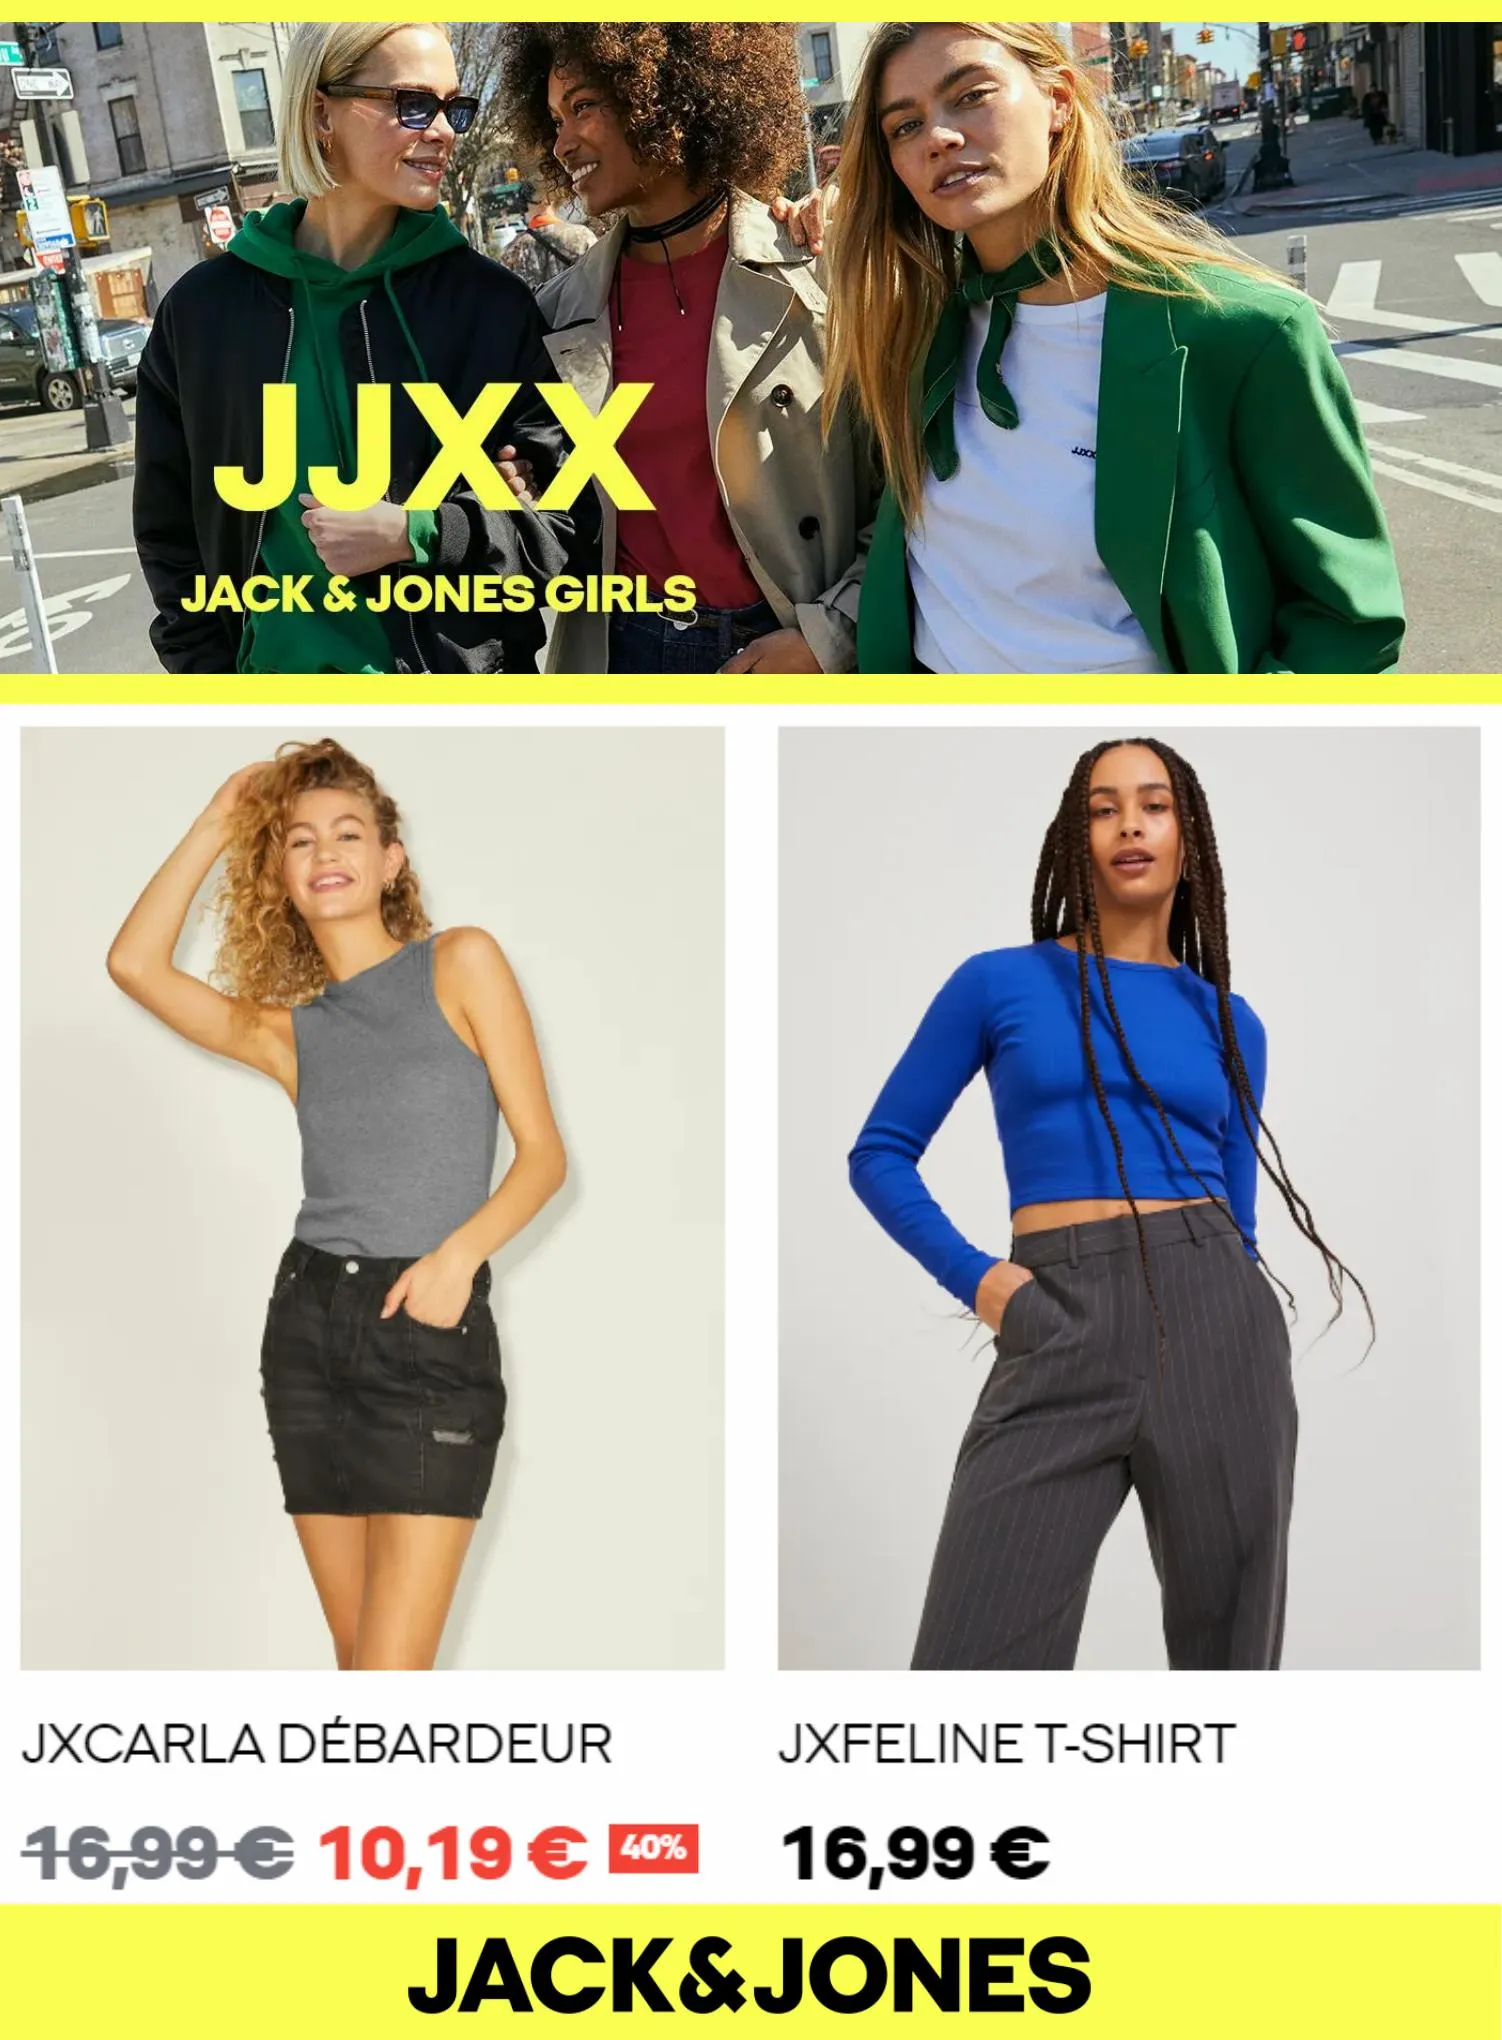 Catalogue JJXX Jack & Jones Girls, page 00006